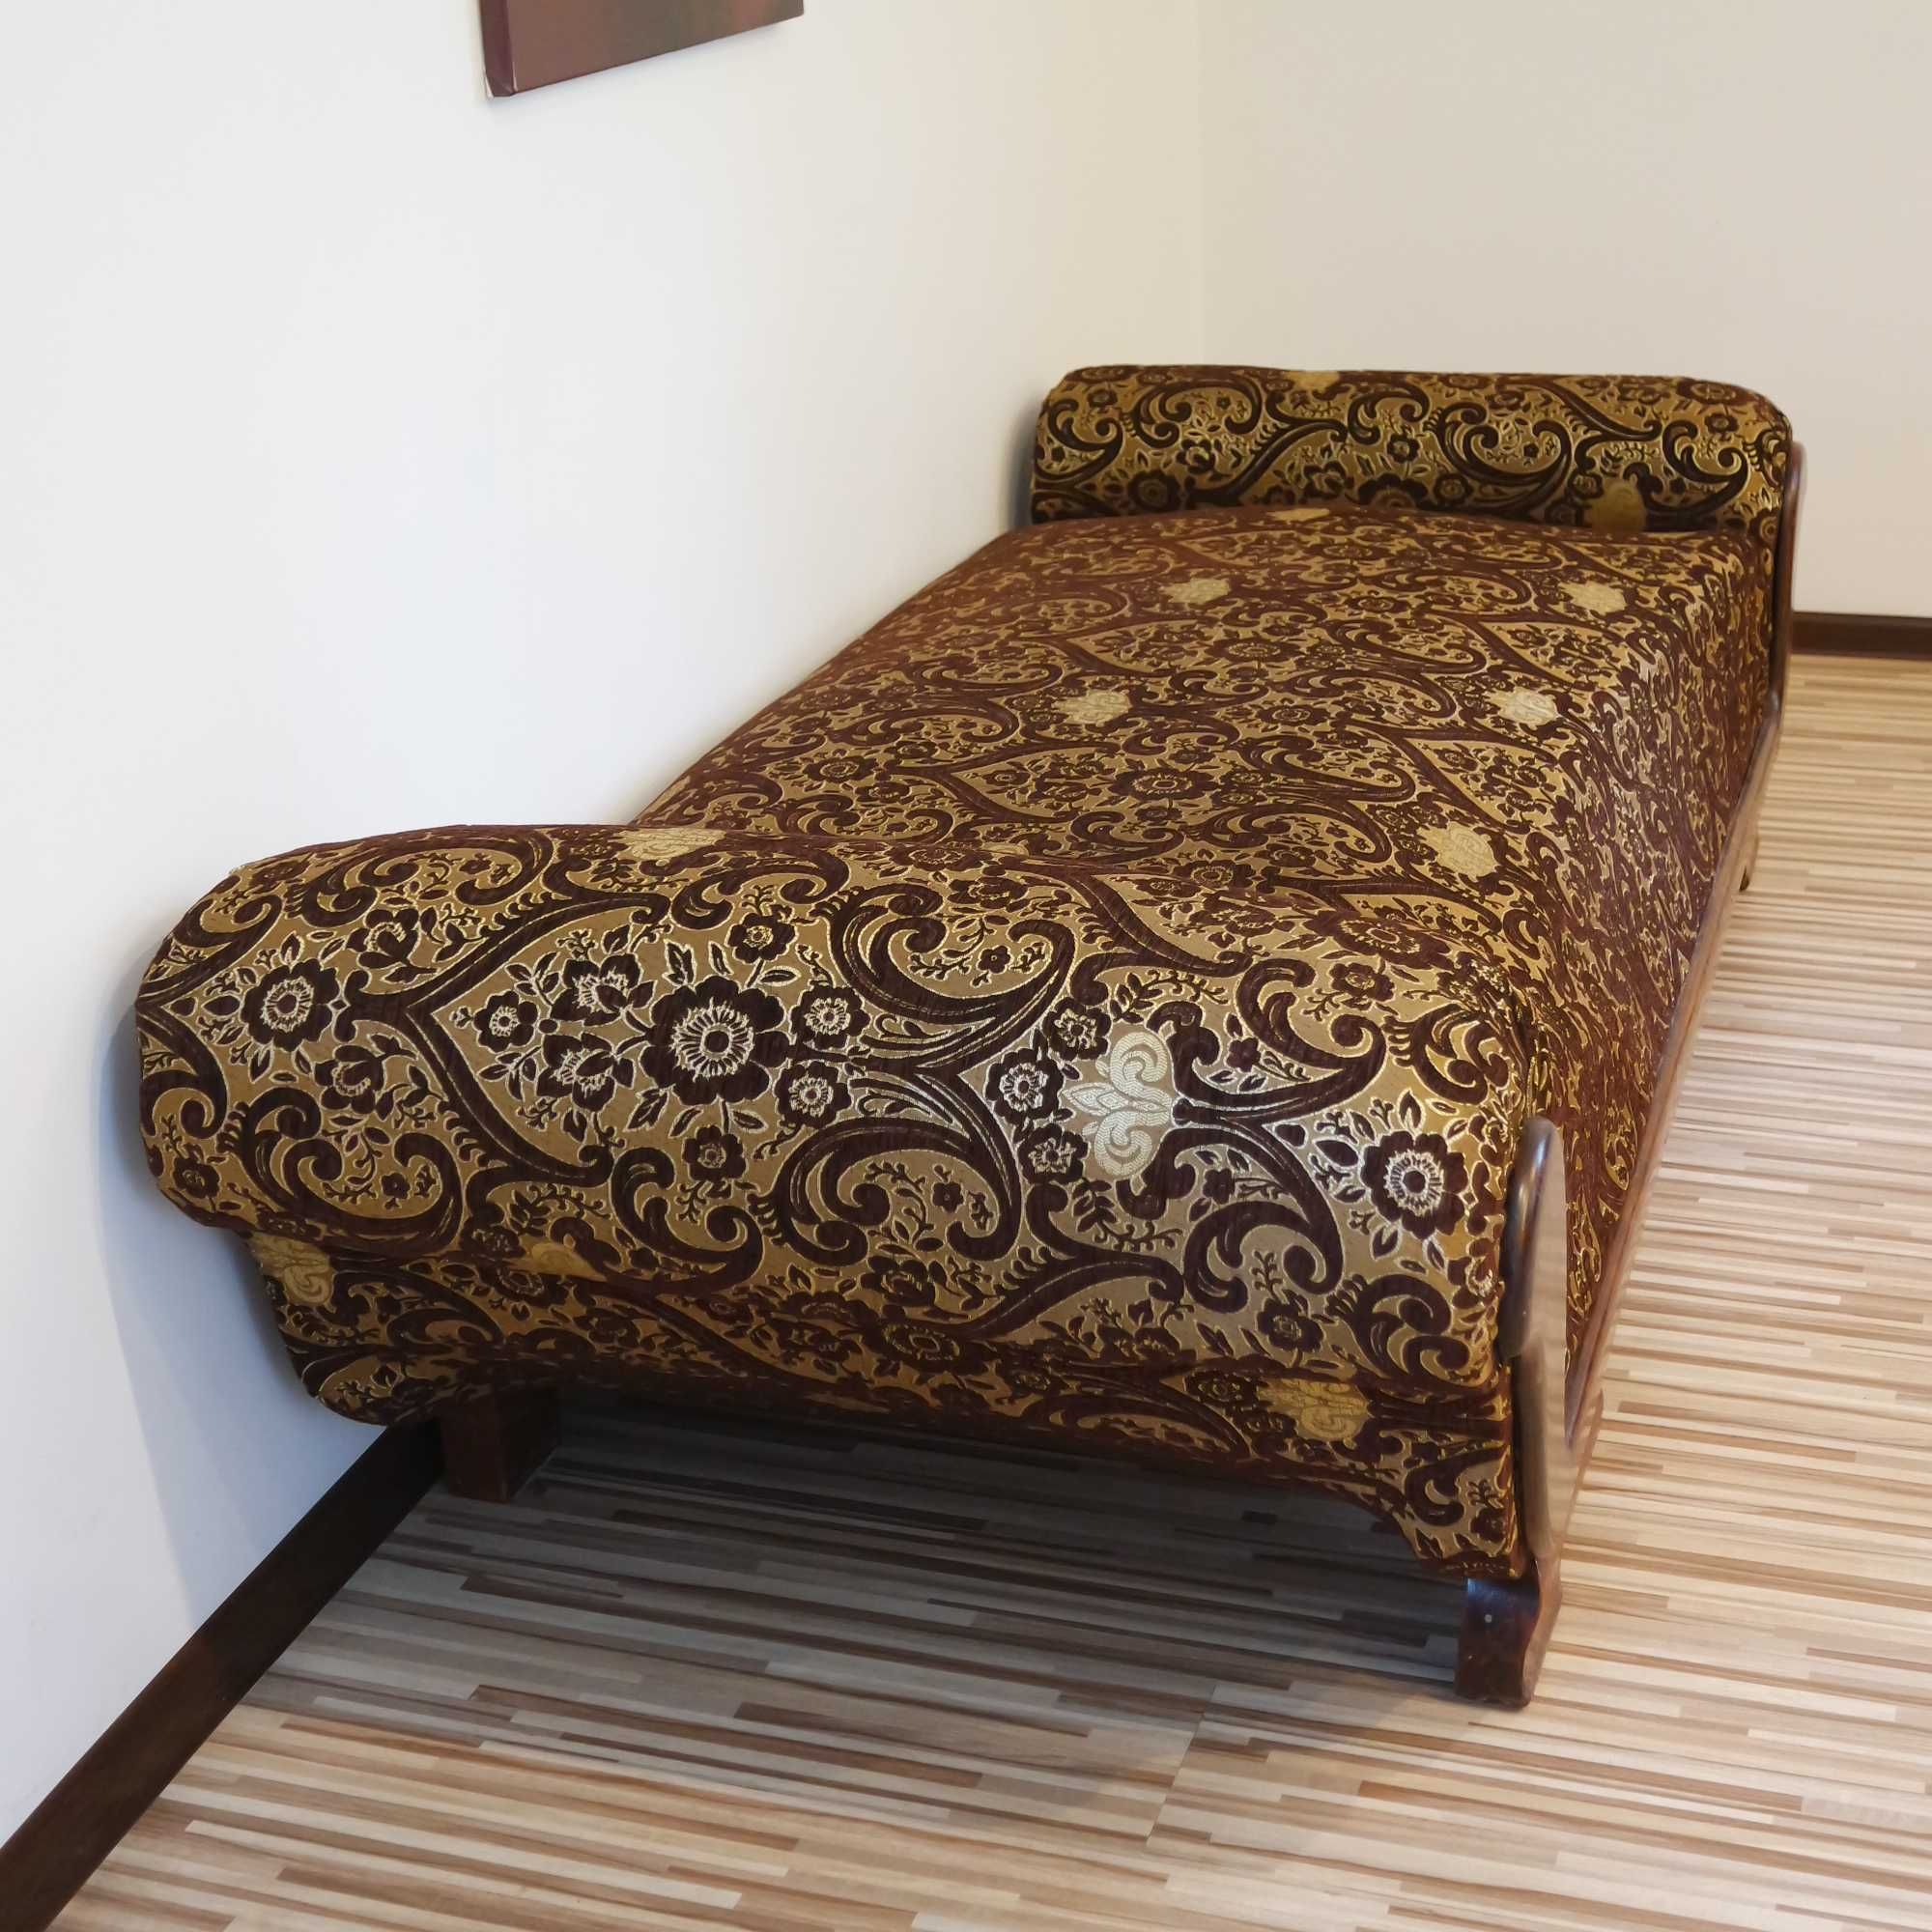 Sofa, łóżko, szezlong - antyk po renowacji